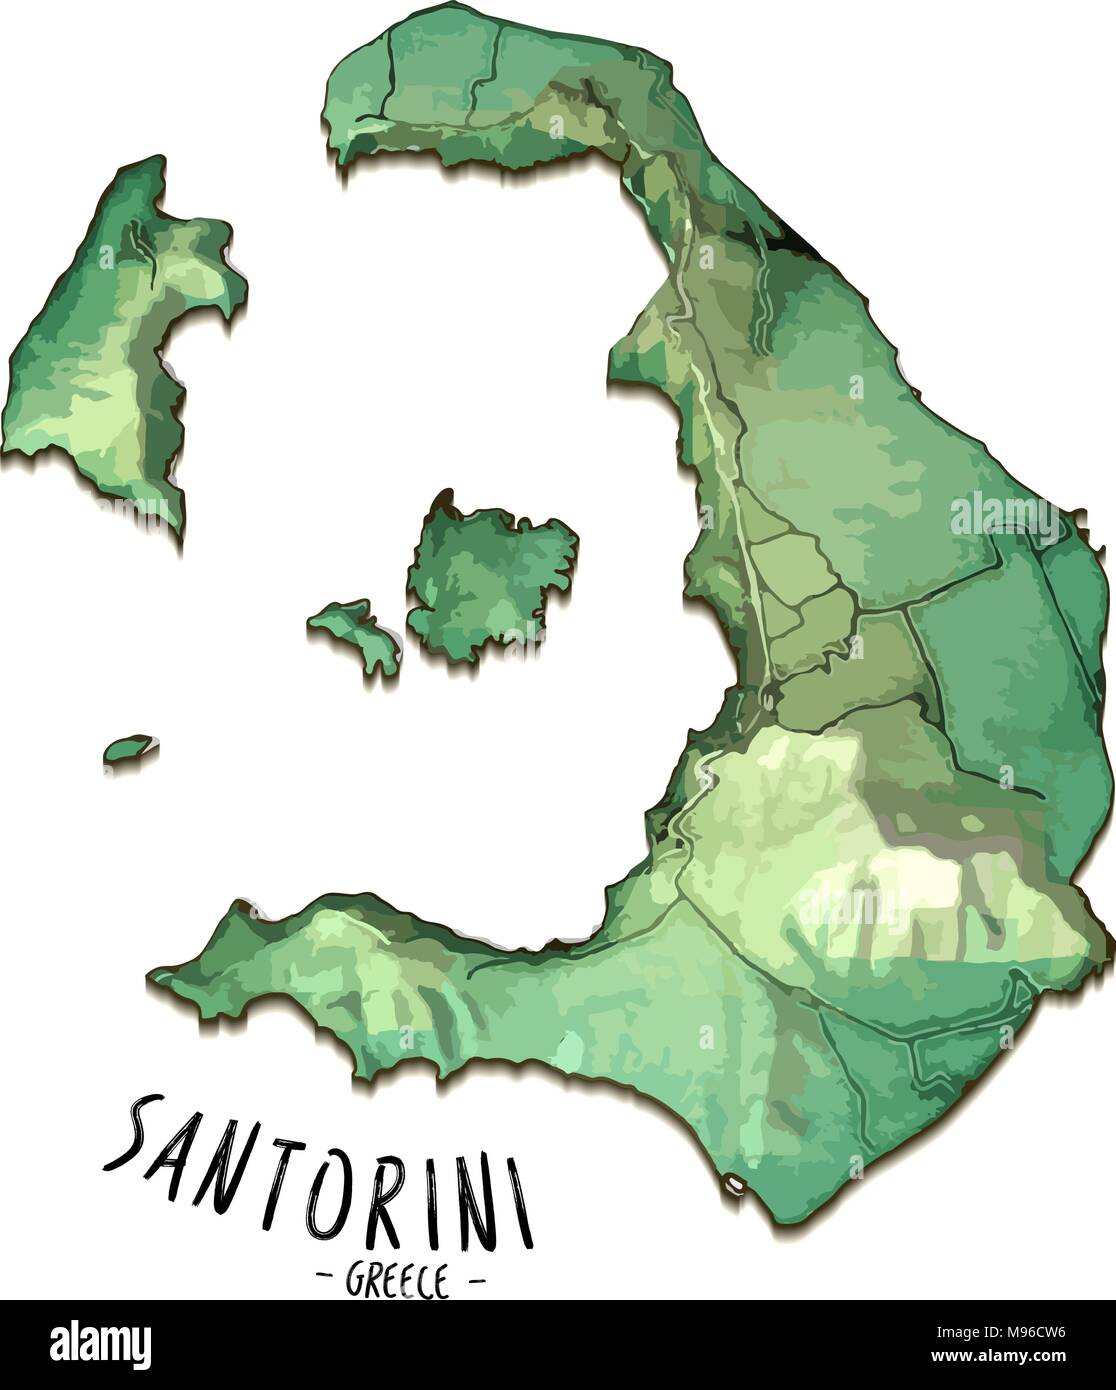 3D-Karte der Insel Santorini, Griechenland. Detaillierte Vector Illustration. Isolierte Konzept für Infografik und Marketing. Stock Vektor